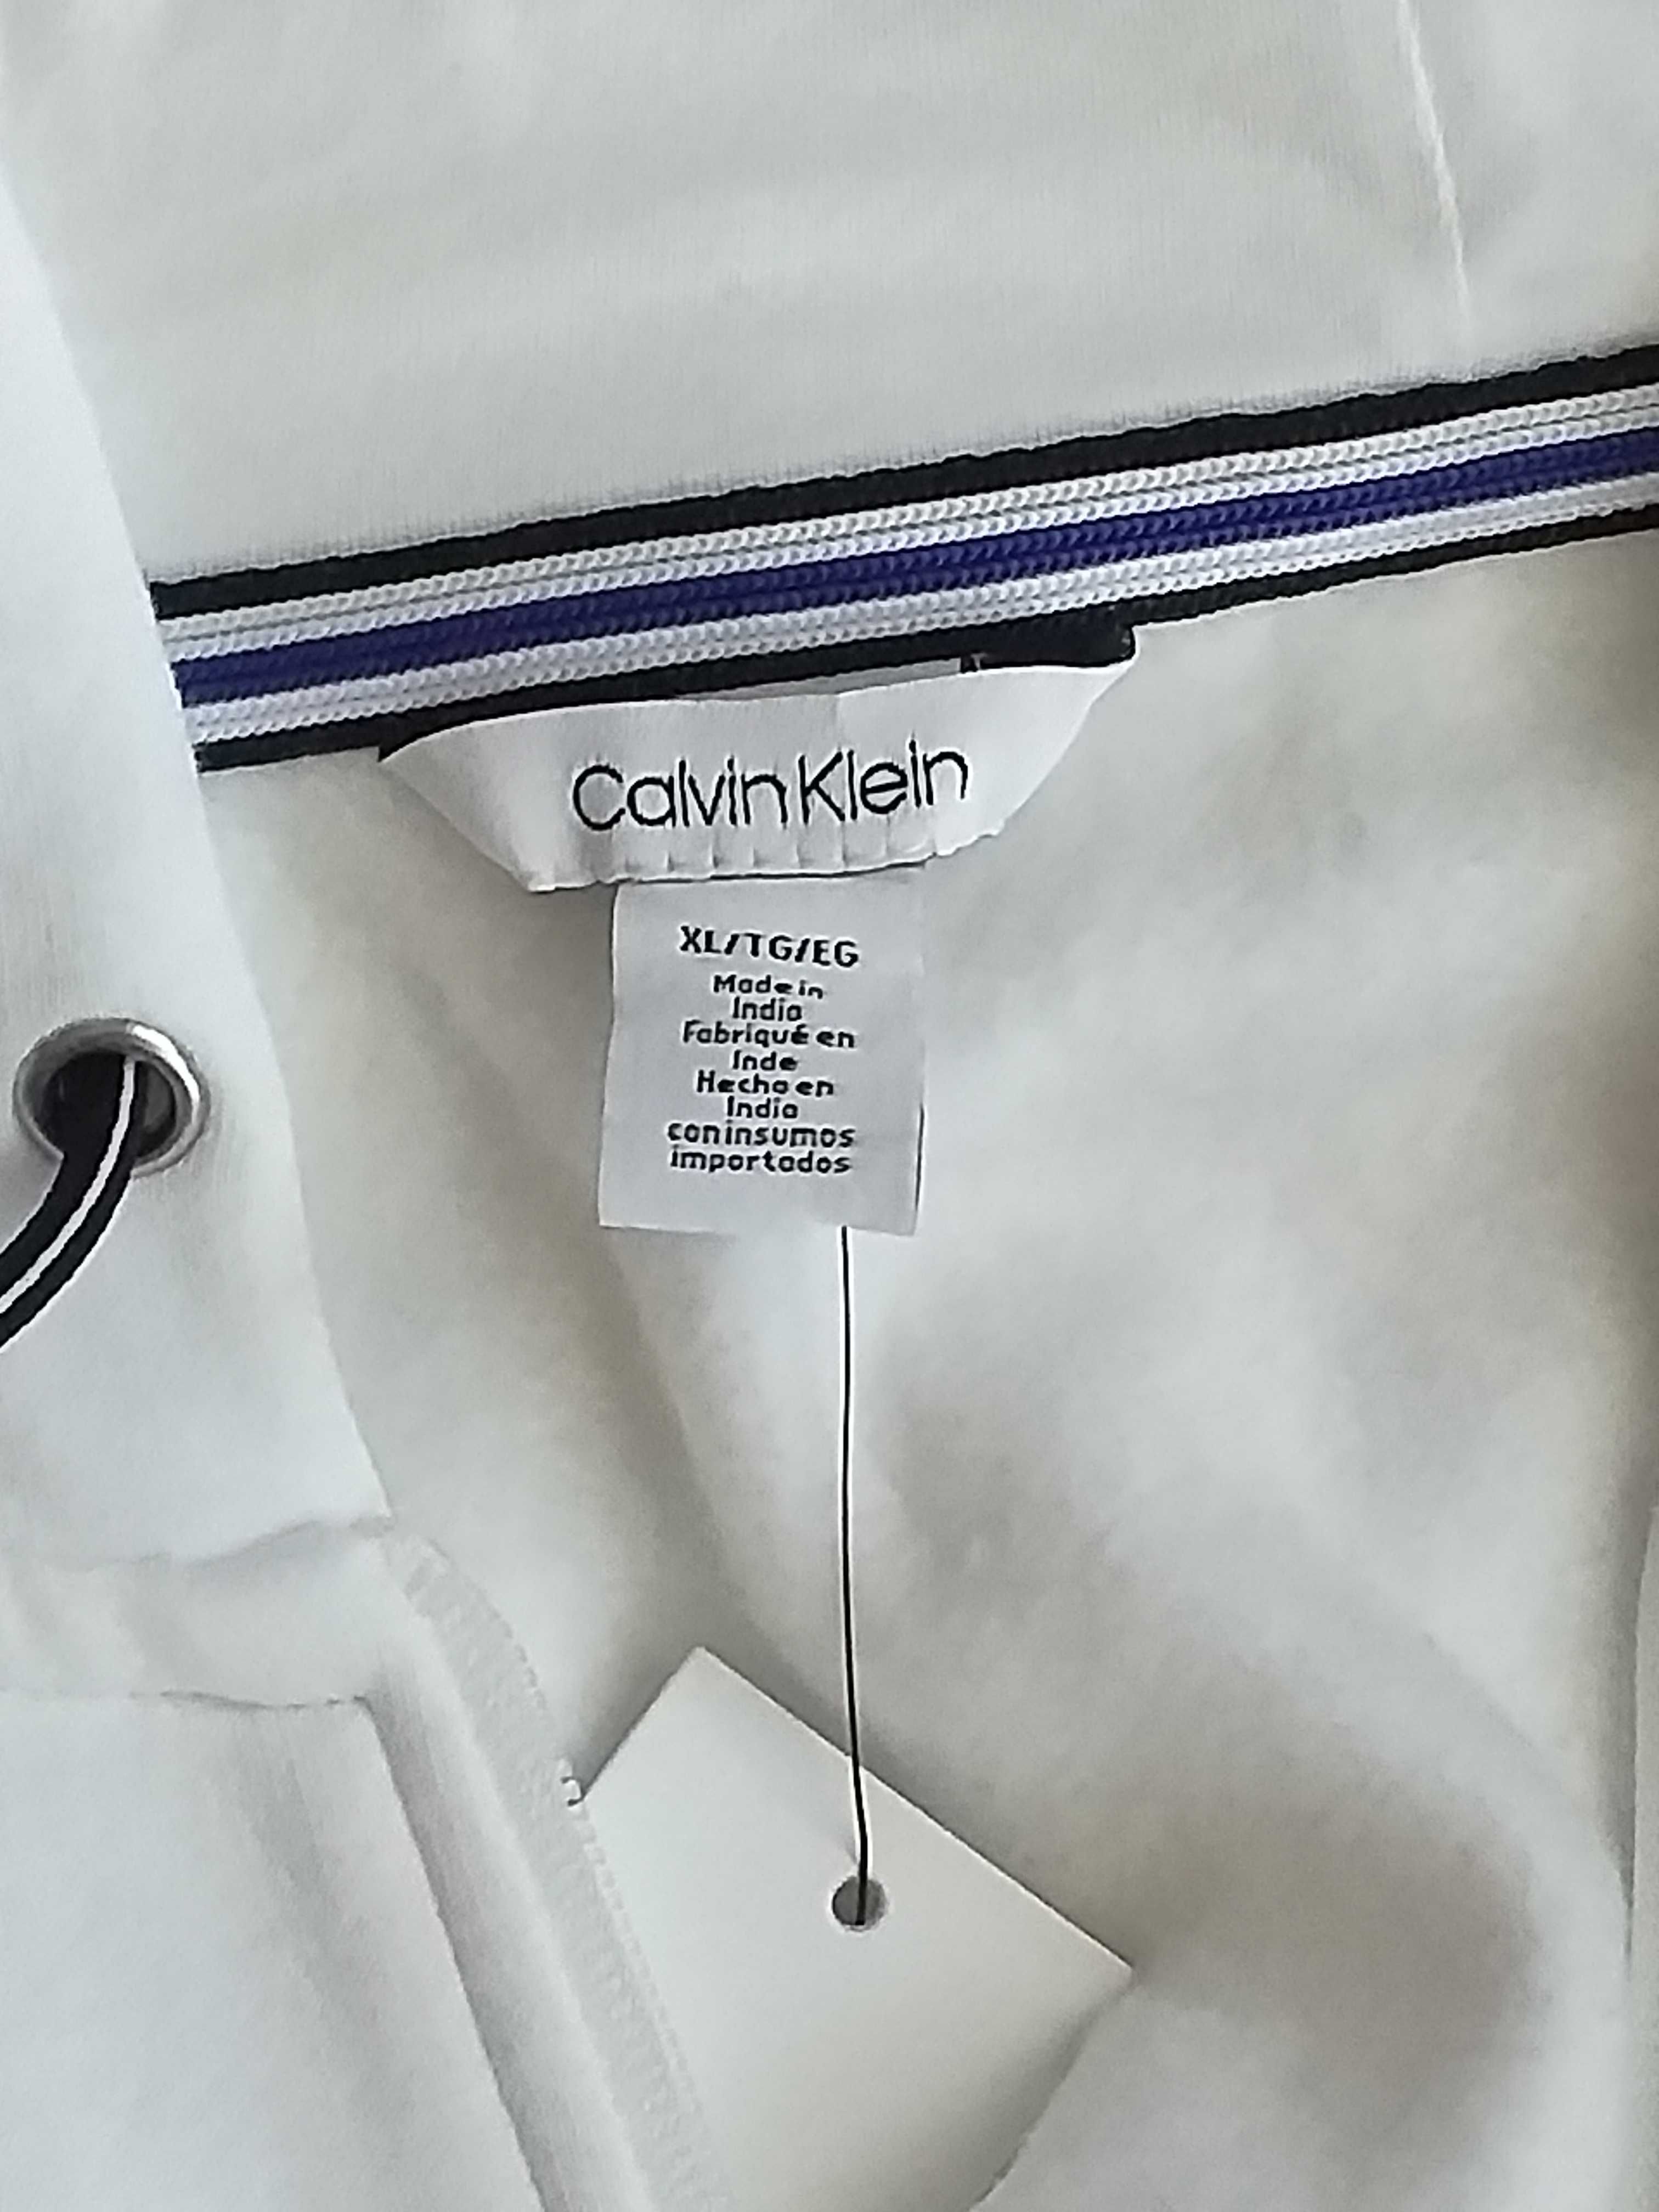 Bluza rozpinana Calvin Klein męska XL